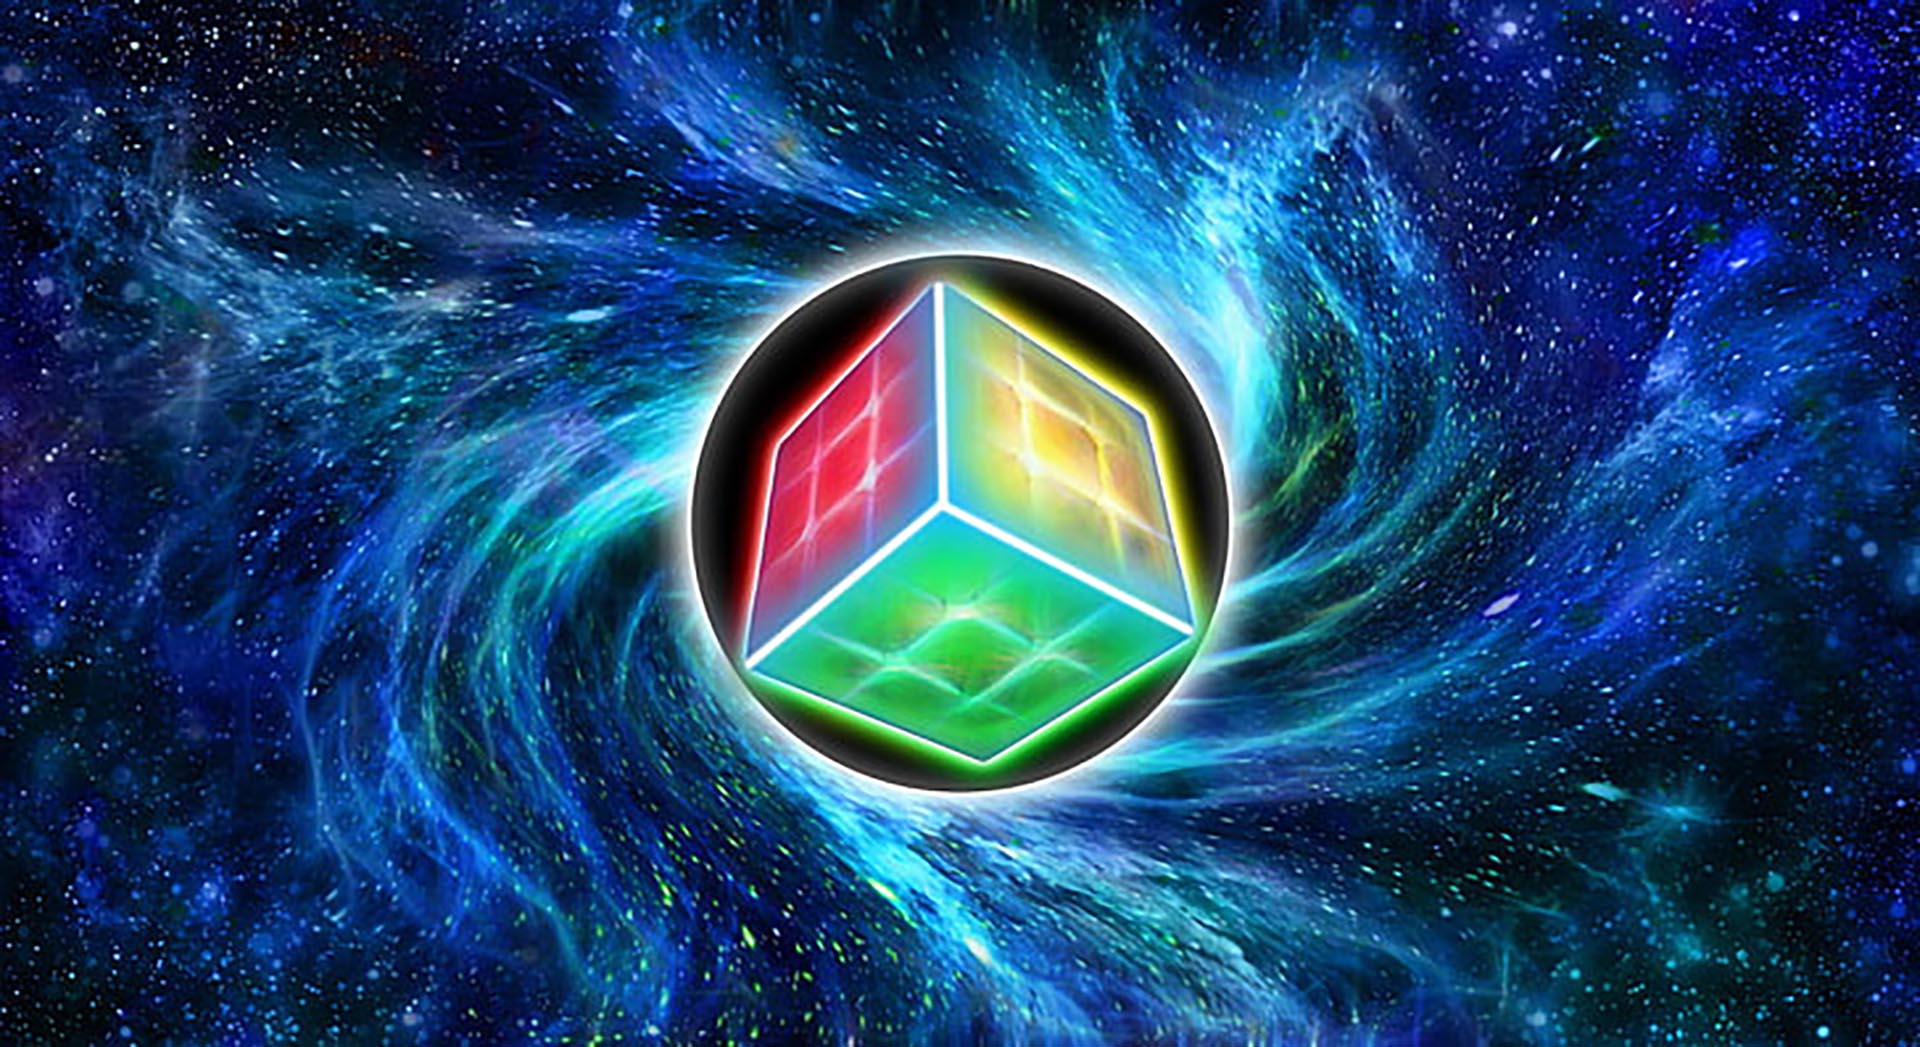 Cận cảnh các ảnh Rubik ngầu sẽ khiến bạn phải hâm mộ tài năng và khả năng giải đố của những người sở hữu chúng. Hãy tìm hiểu và khám phá sự tôn trọng, sự cảm khái và niềm đam mê của những người chơi Rubik.